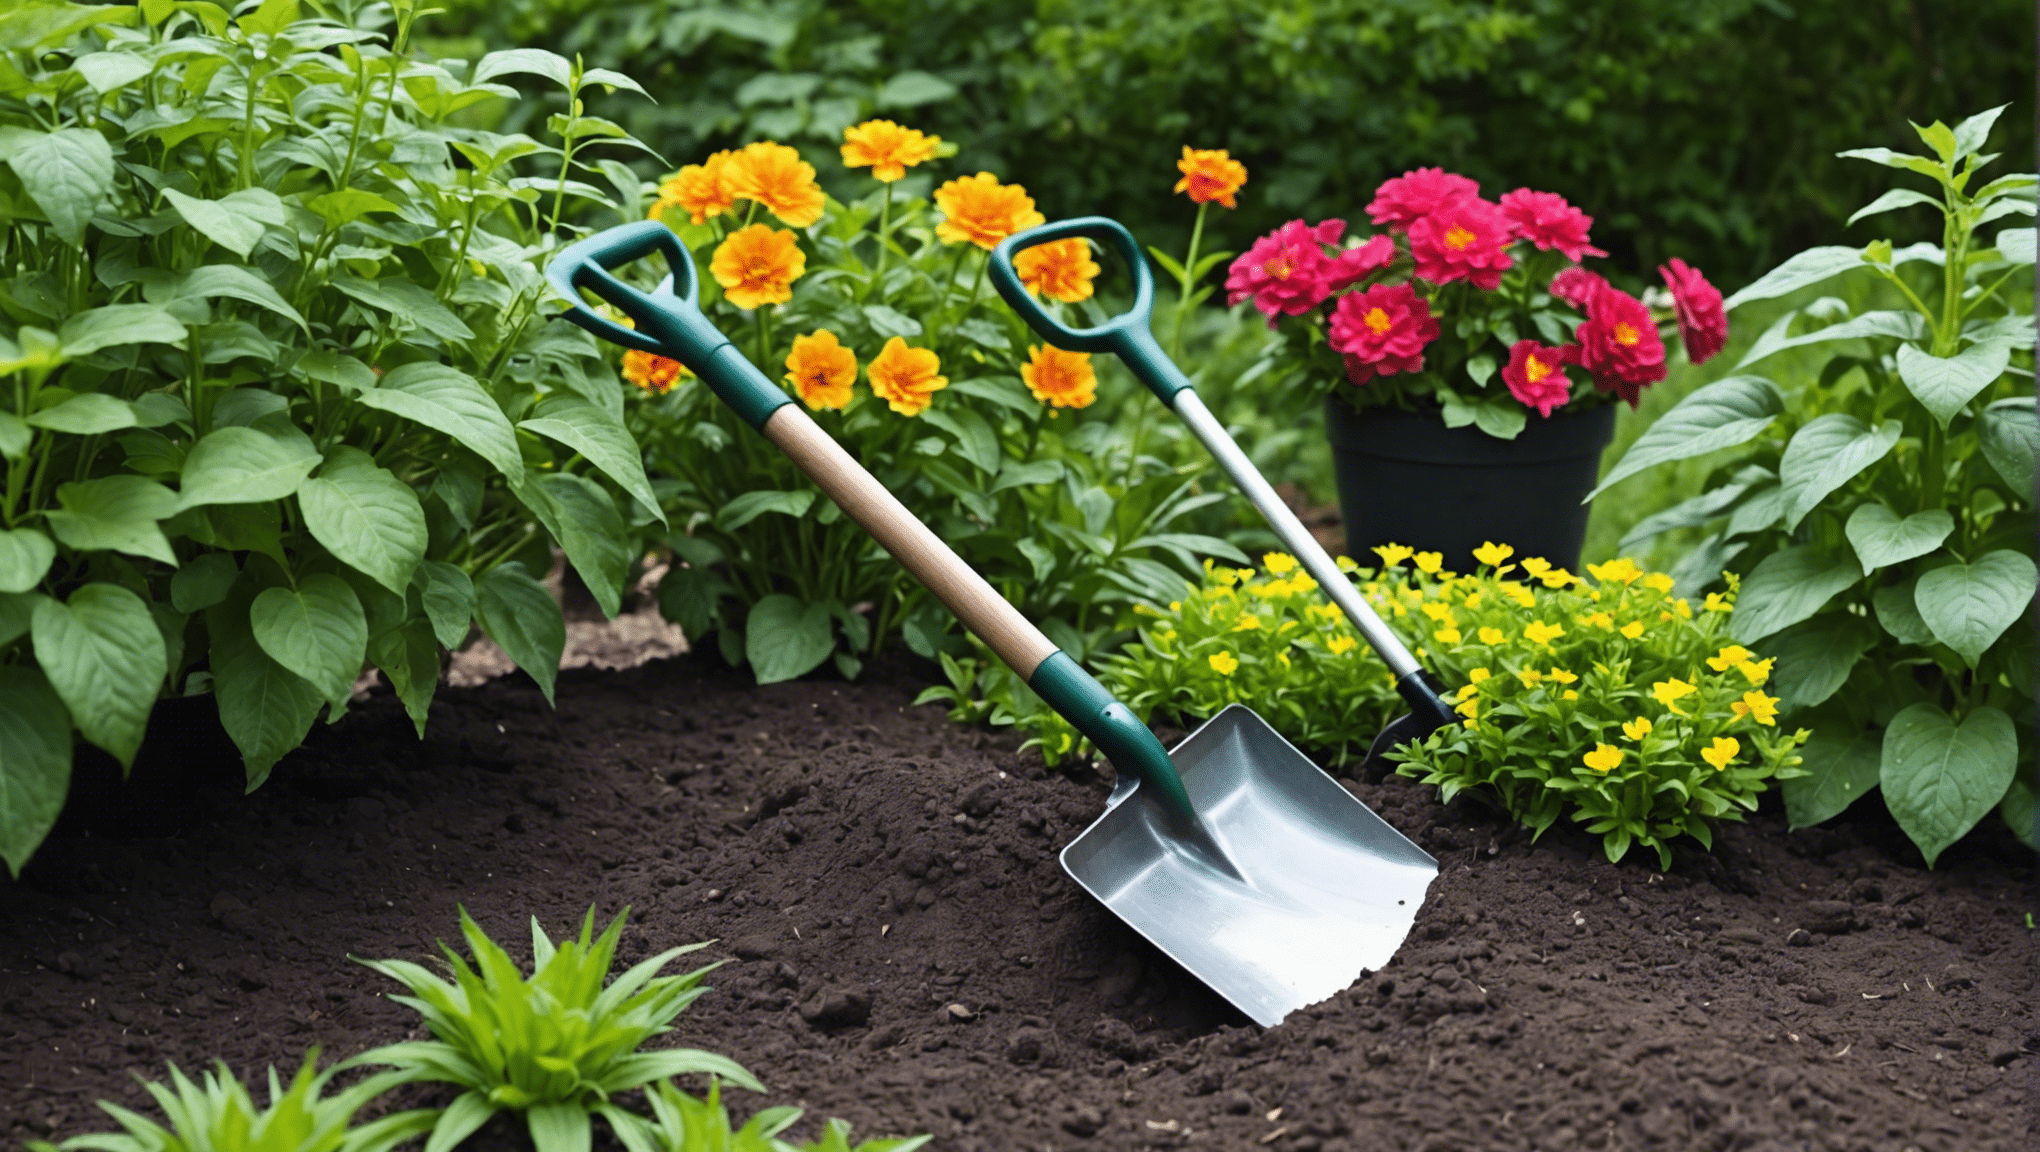 Yüksek kaliteli, dayanıklı alet seçeneklerimizle tüm bahçecilik ihtiyaçlarınız için ideal küçük bahçe küreğini bulun.